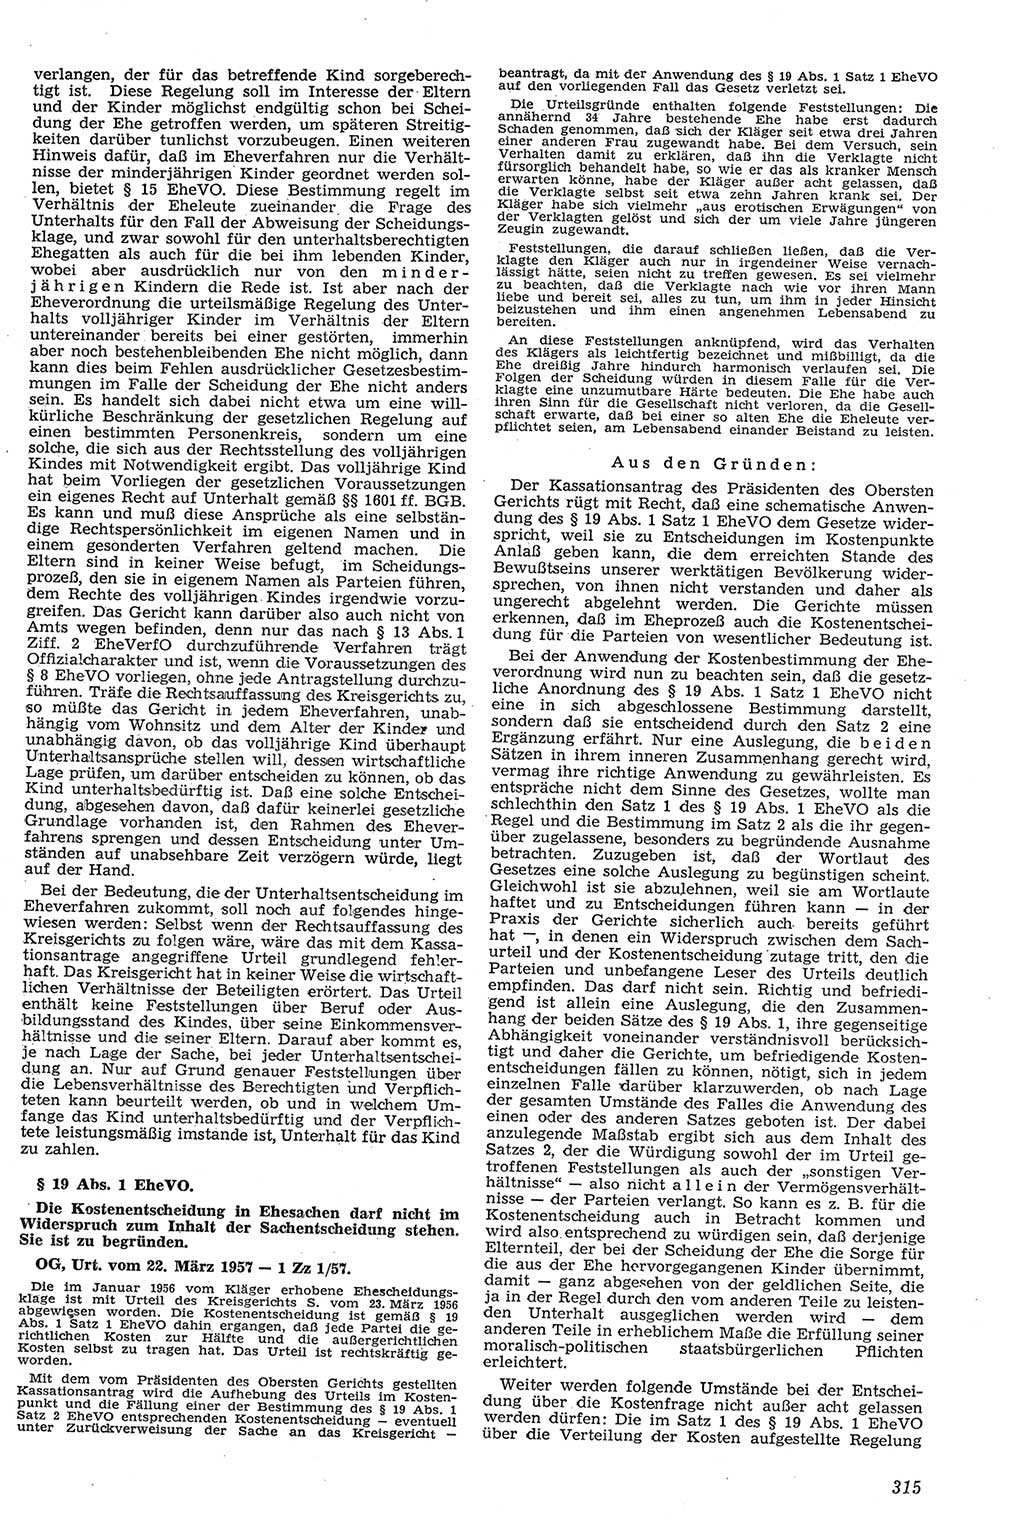 Neue Justiz (NJ), Zeitschrift für Recht und Rechtswissenschaft [Deutsche Demokratische Republik (DDR)], 11. Jahrgang 1957, Seite 315 (NJ DDR 1957, S. 315)